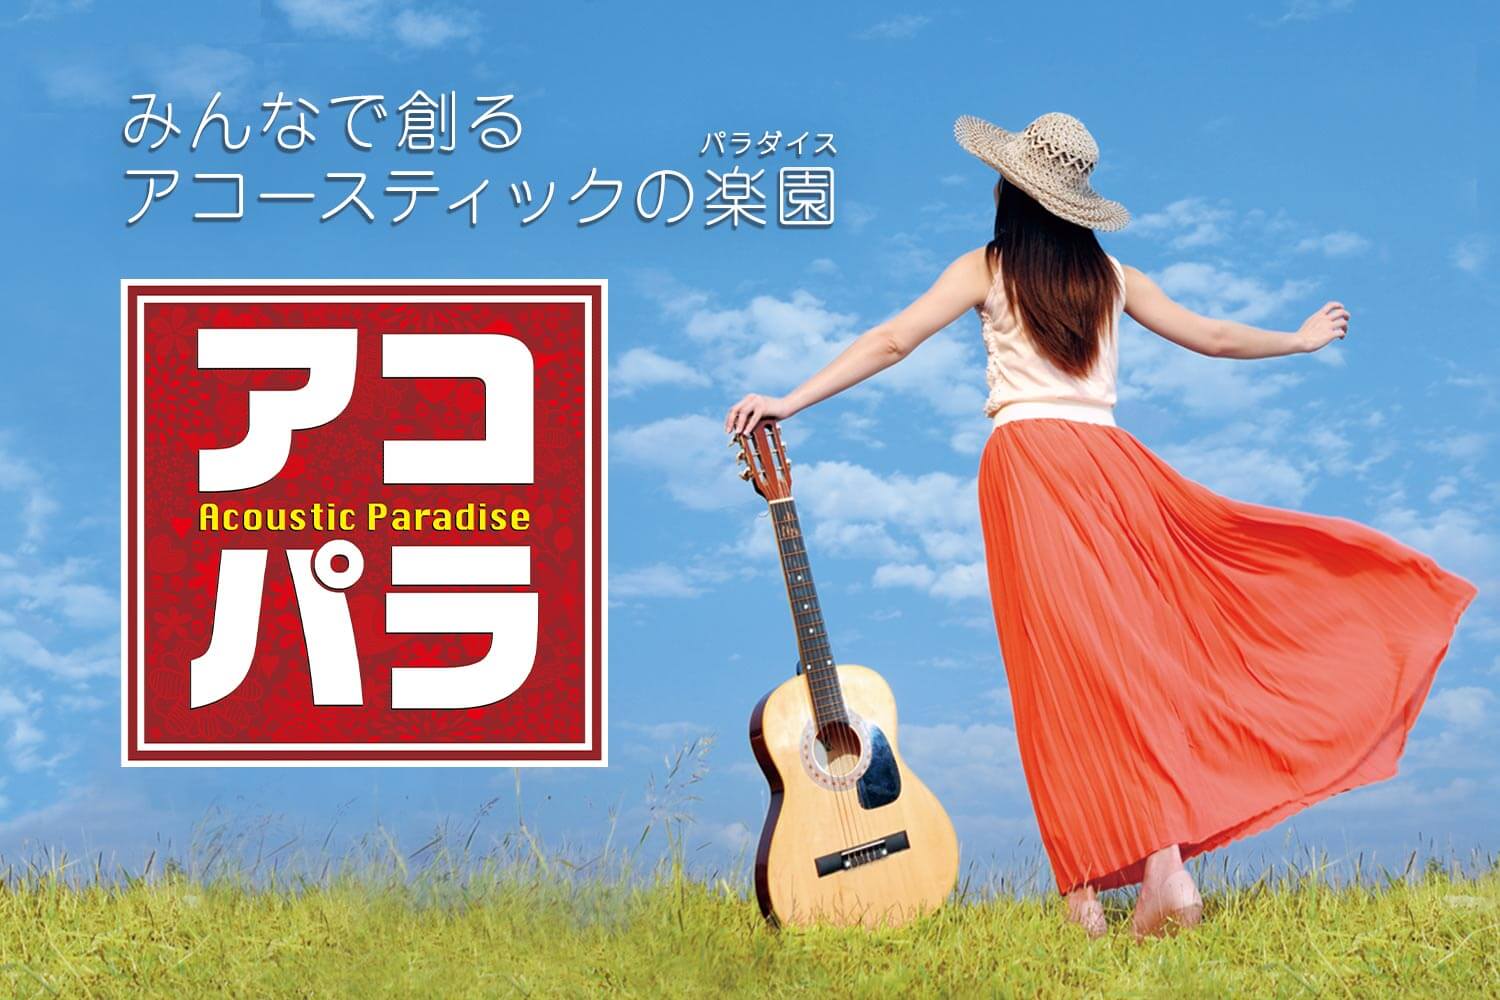 **アコースティックにこだわったライブイベント 島村楽器が主催する、アマチュアミュージシャンによる全国規模のアコースティックサウンドにこだわったライブイベントです。 [https://www.shimamura.co.jp/p/event/acopara/index.html::title=アコパラ […]